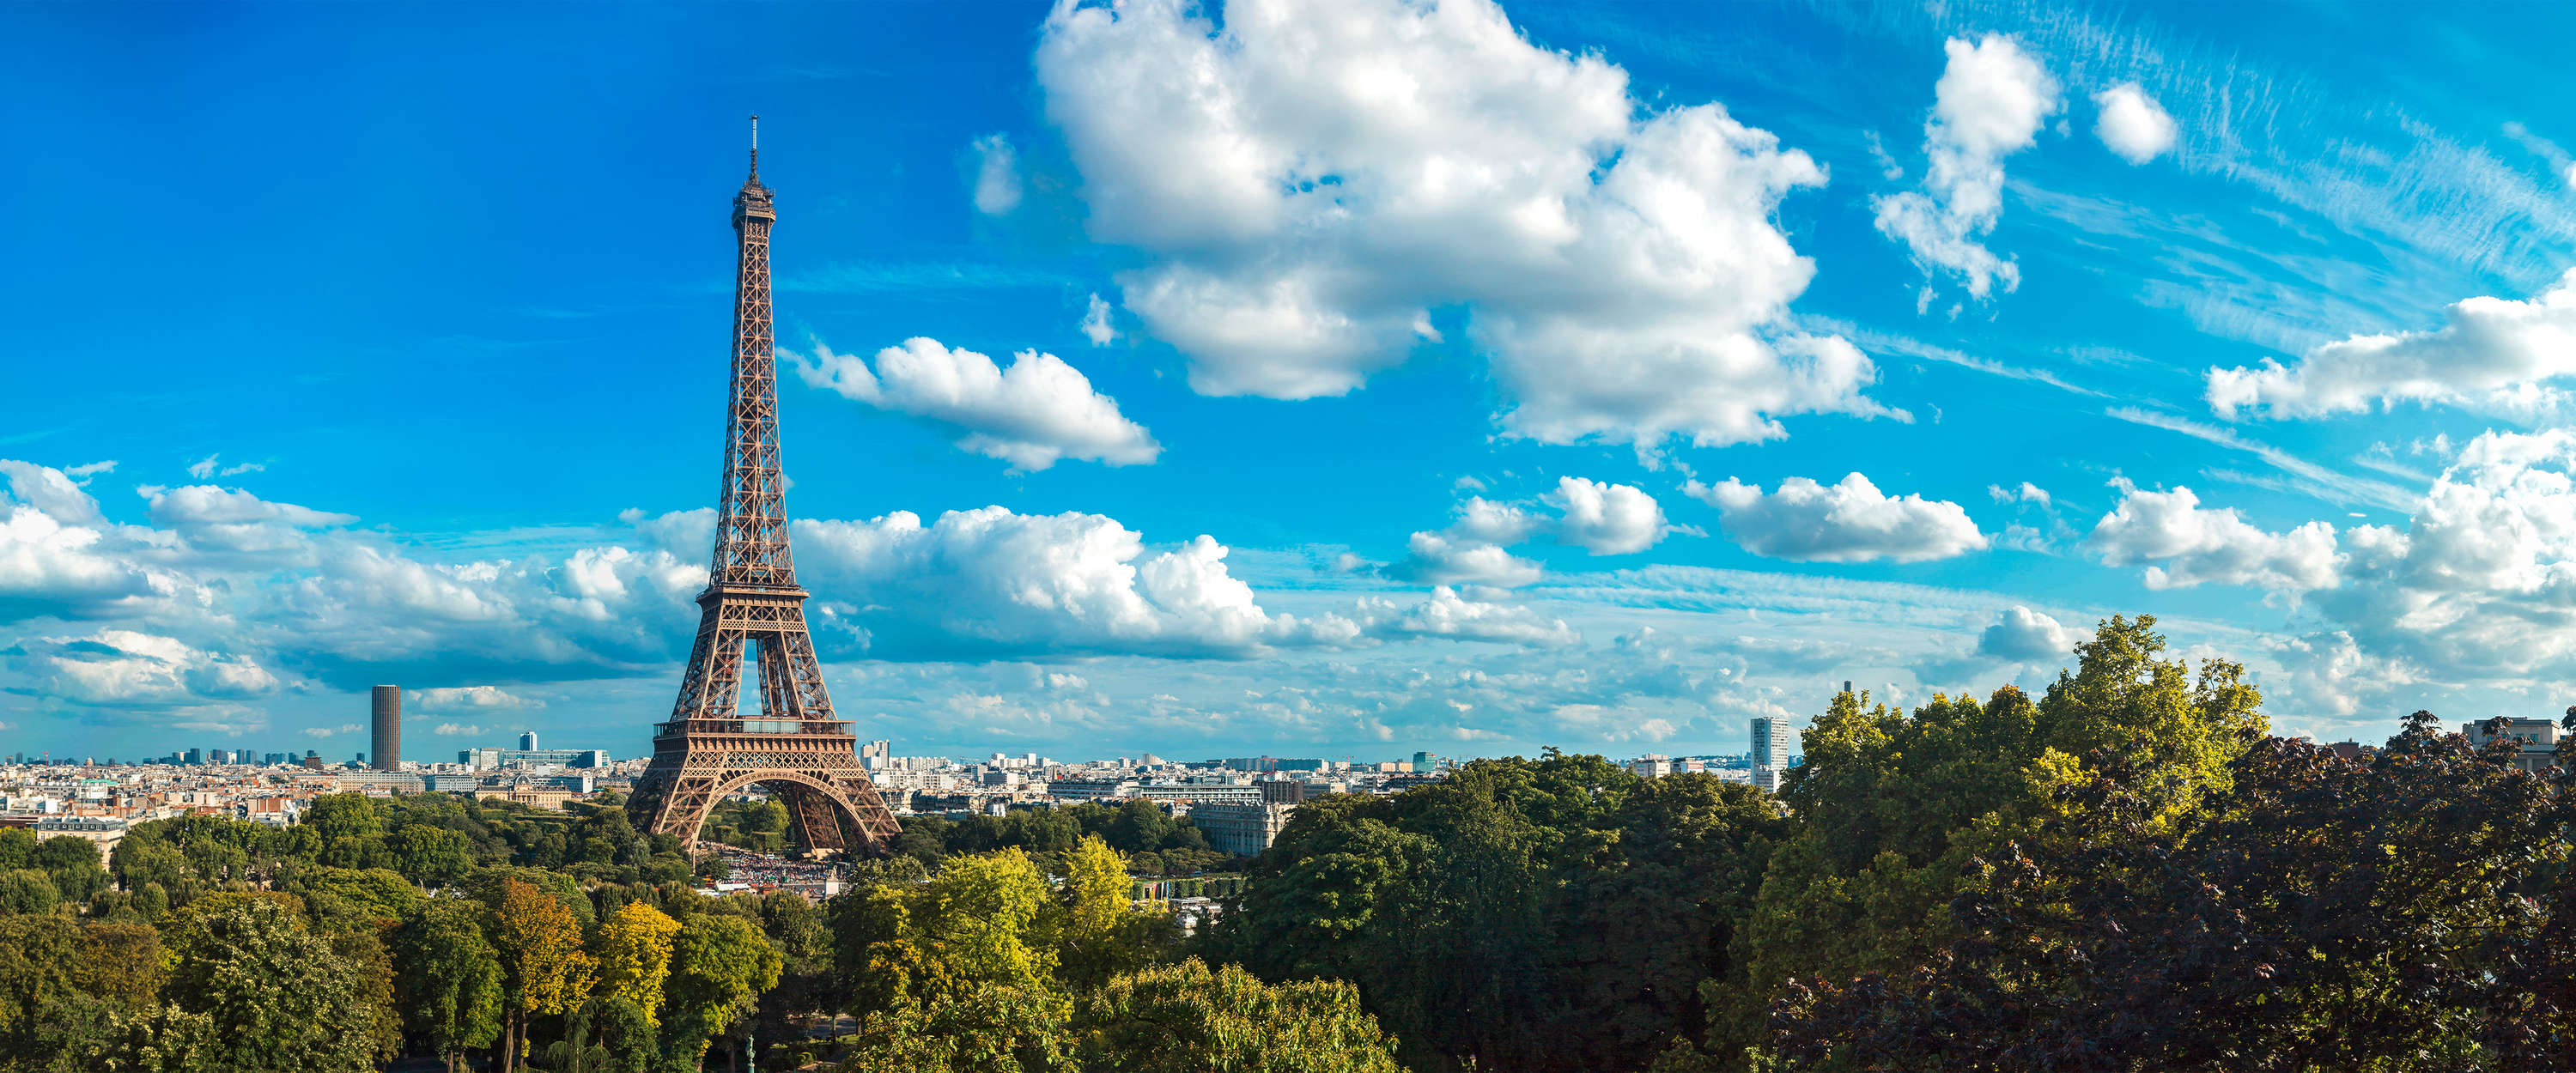             Eiffeltoren & Skyline van Parijs Behang
        